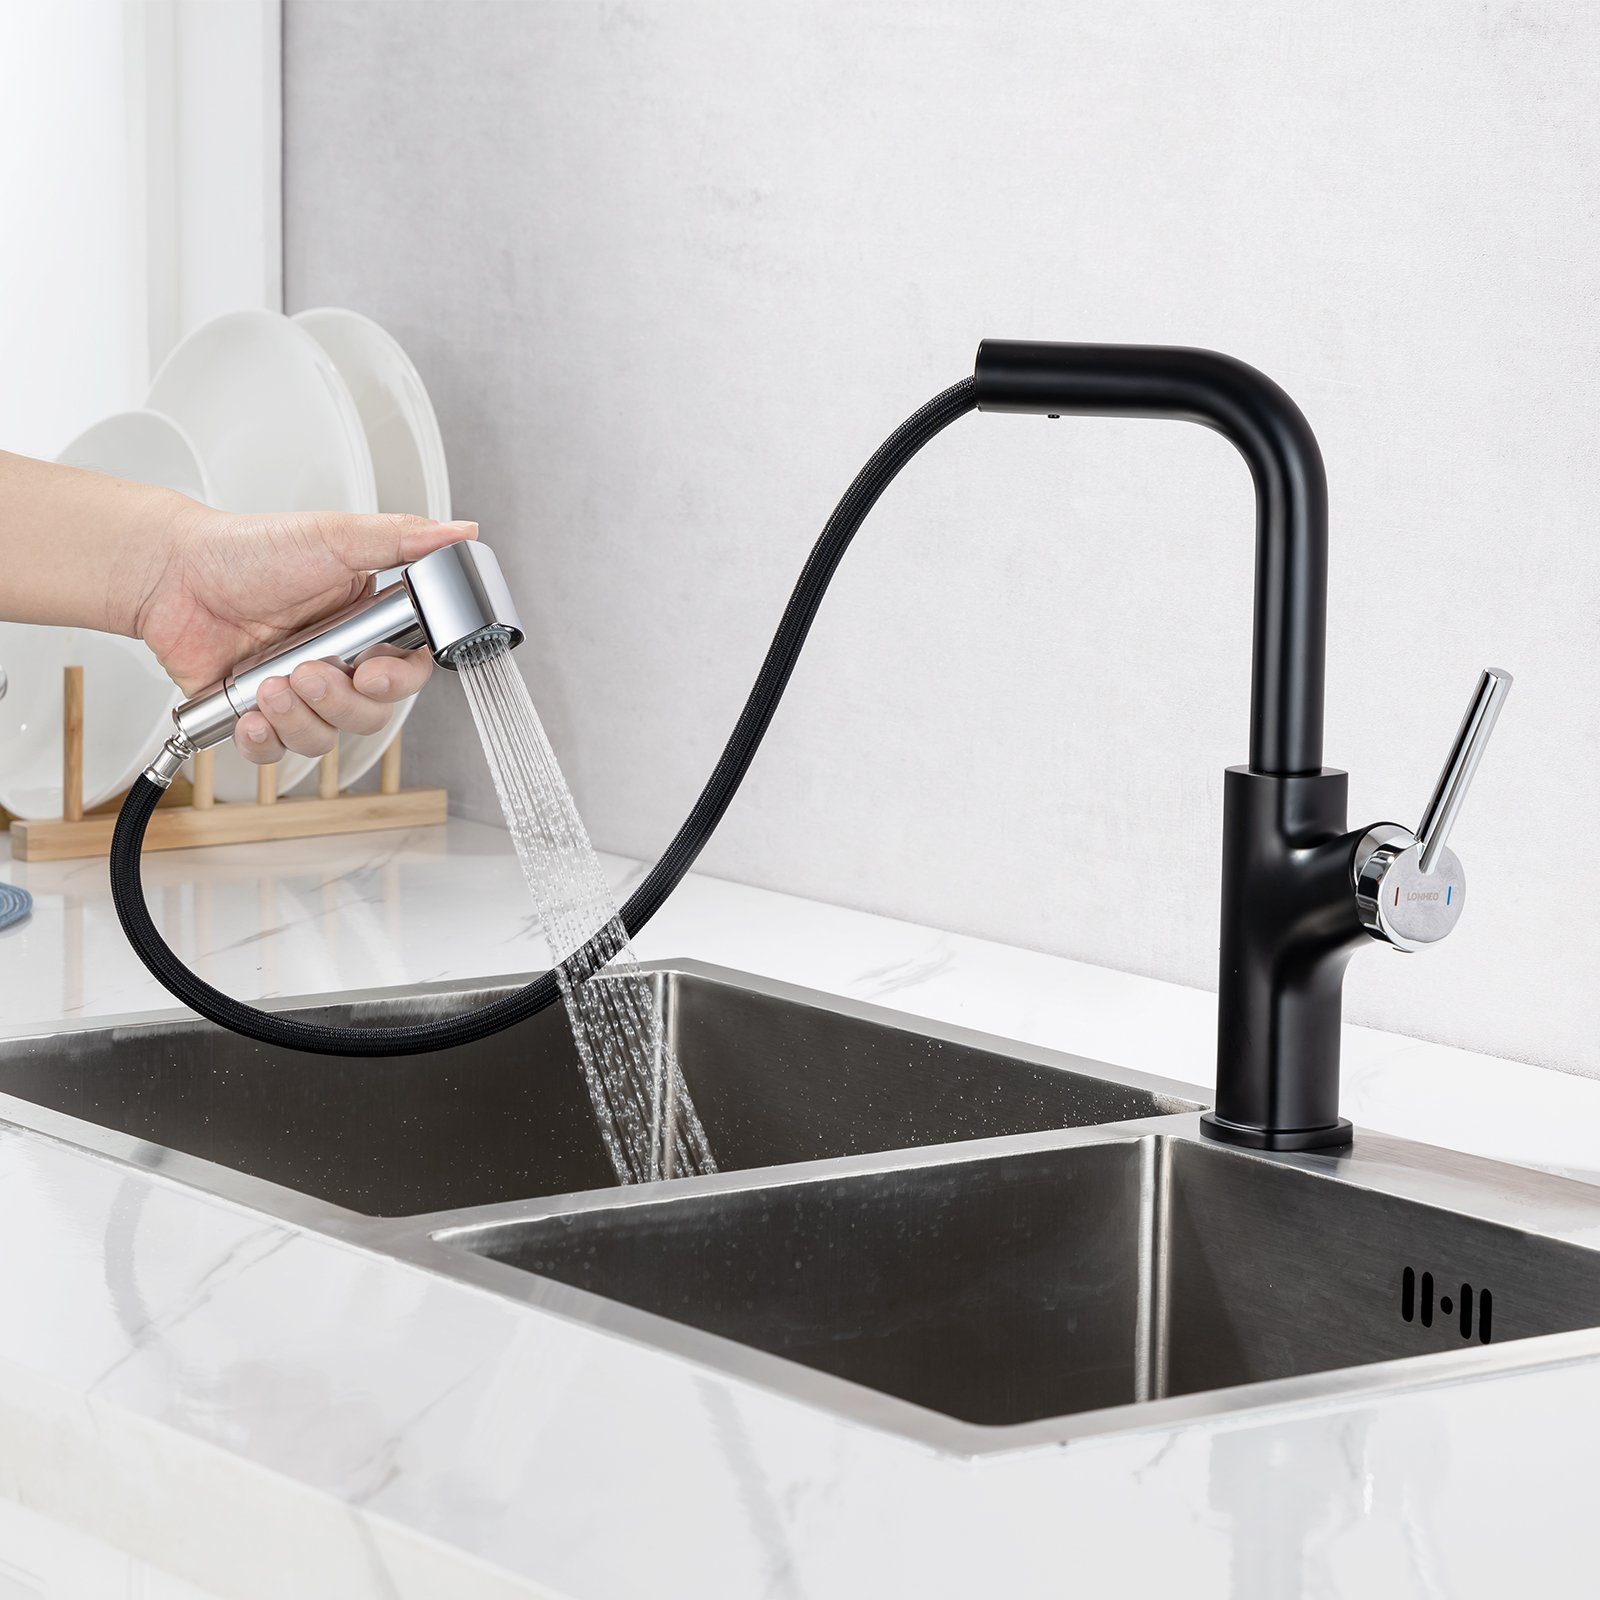 Auralum Küchenarmatur Küchenarmatur Ausziehbar Hochdruck Küchenwasserhah 2 Wasserauslassmodi Chrom+Schwarz